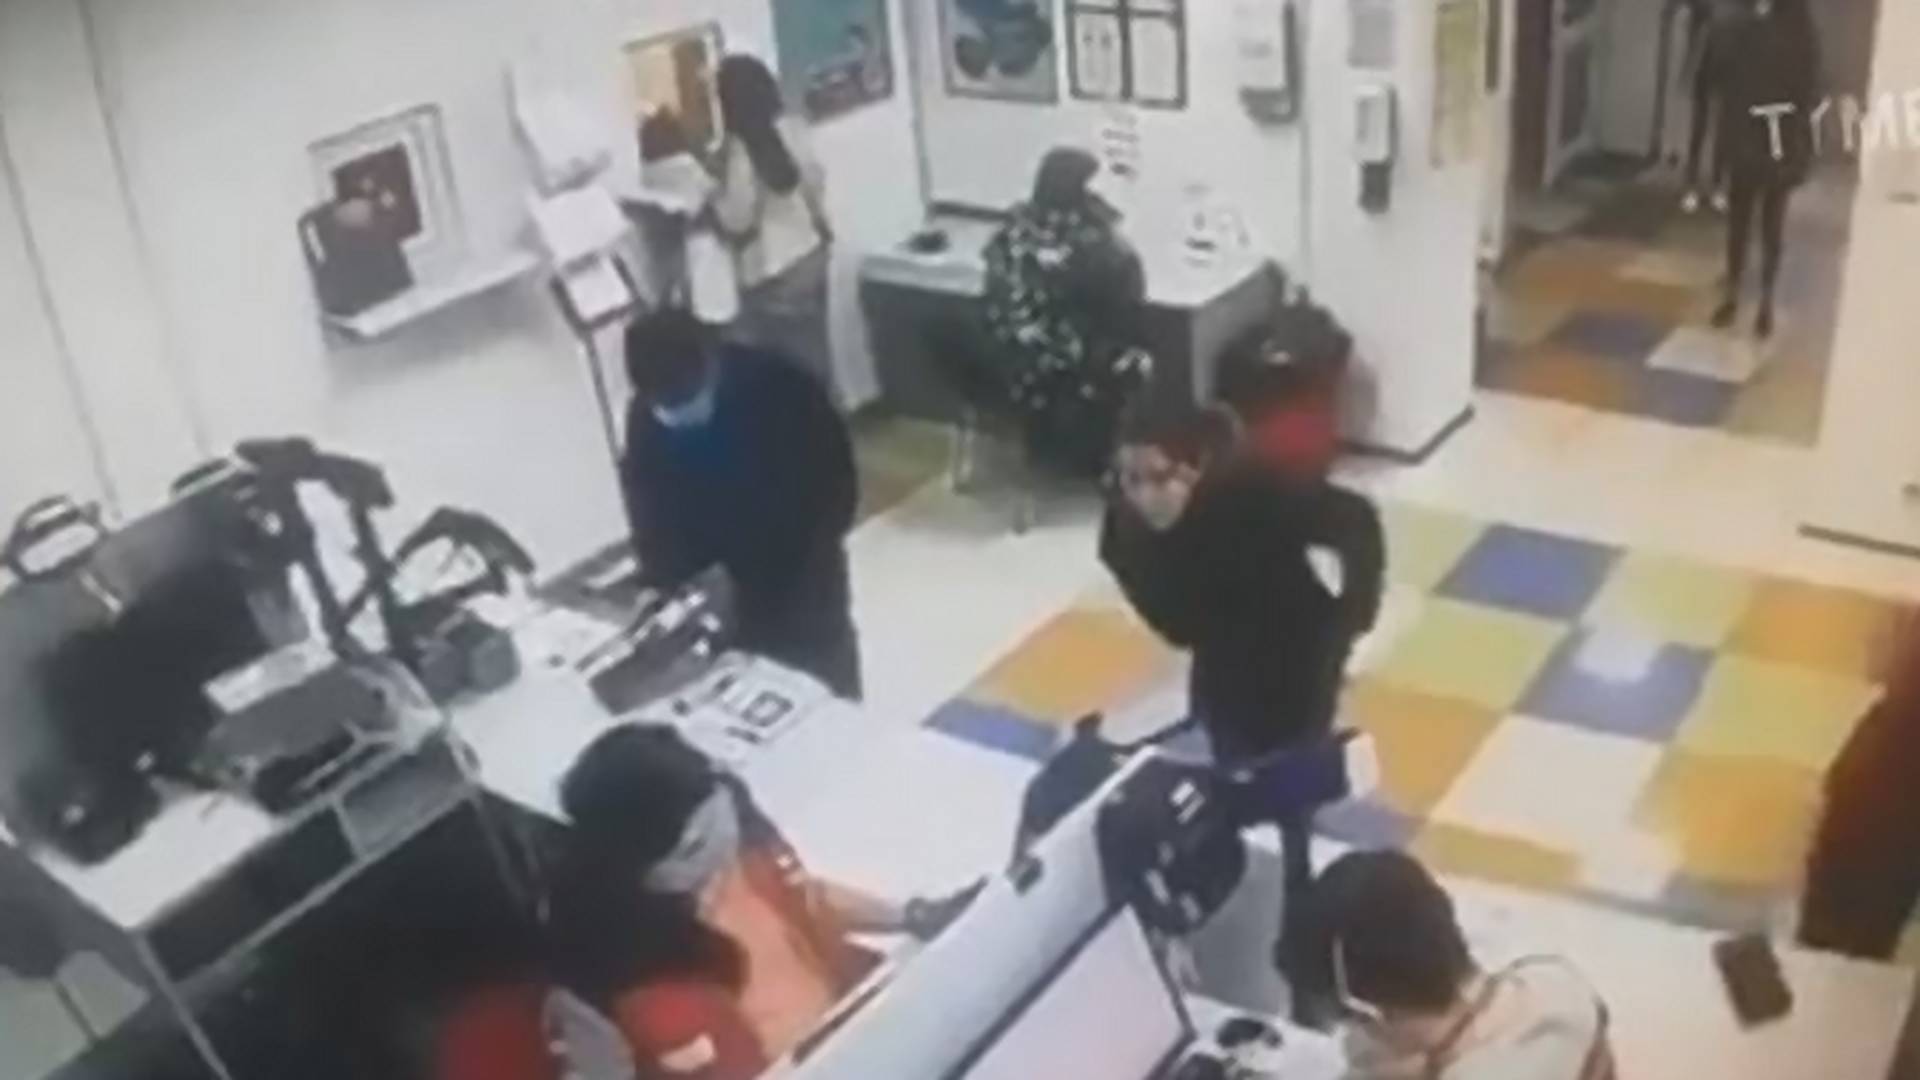 Letolta majd a fejére húzta a bugyiját egy nő a postán, mert maszk nélkül nem szolgálták ki - Videó